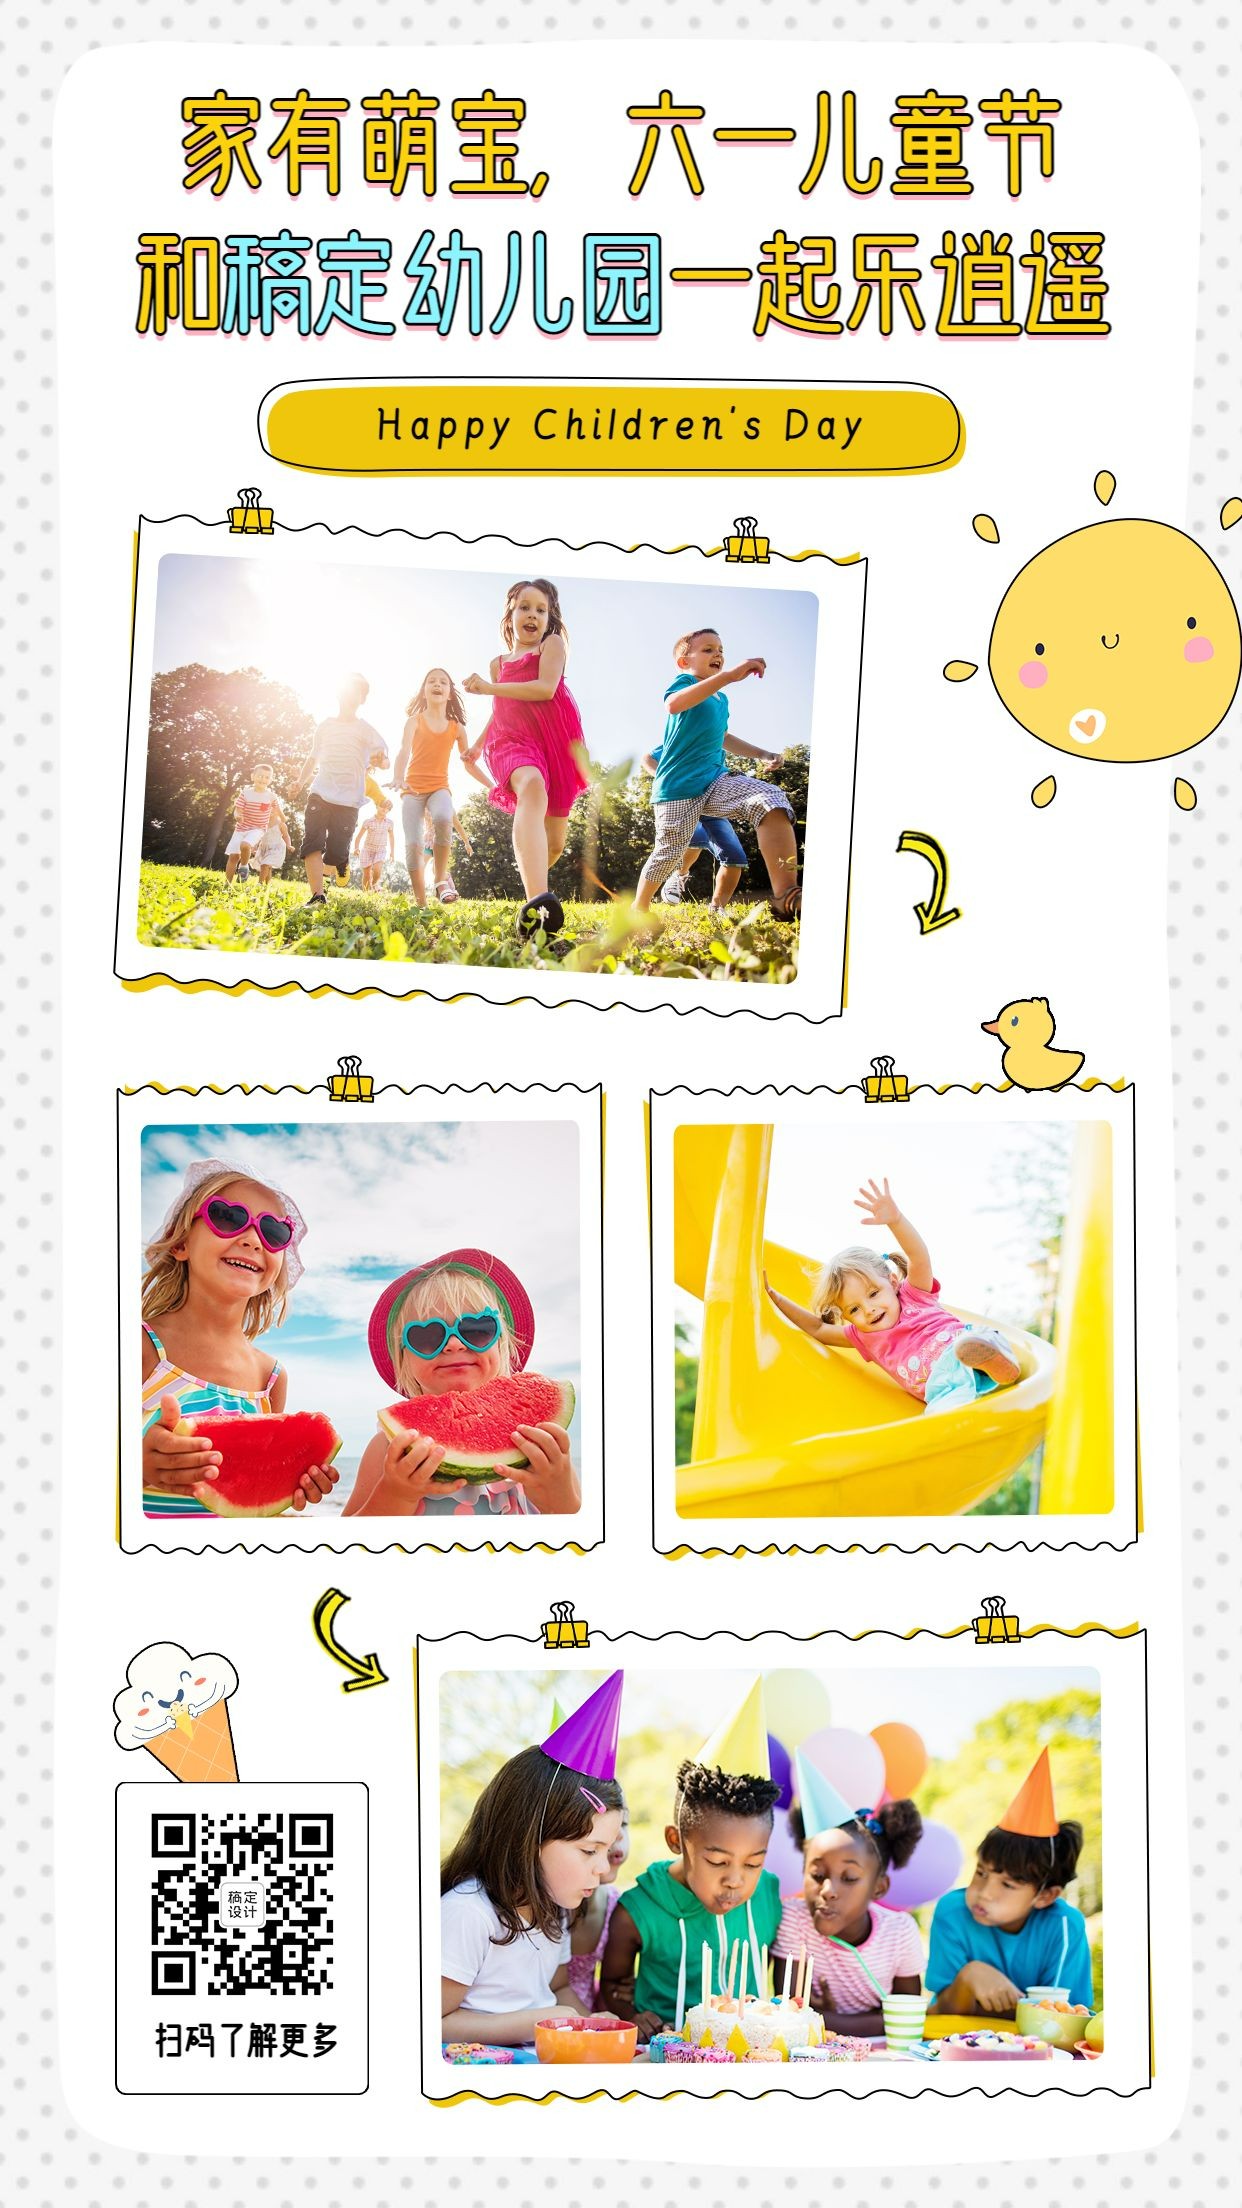 暑假招生儿童活动晒图相册模板预览效果